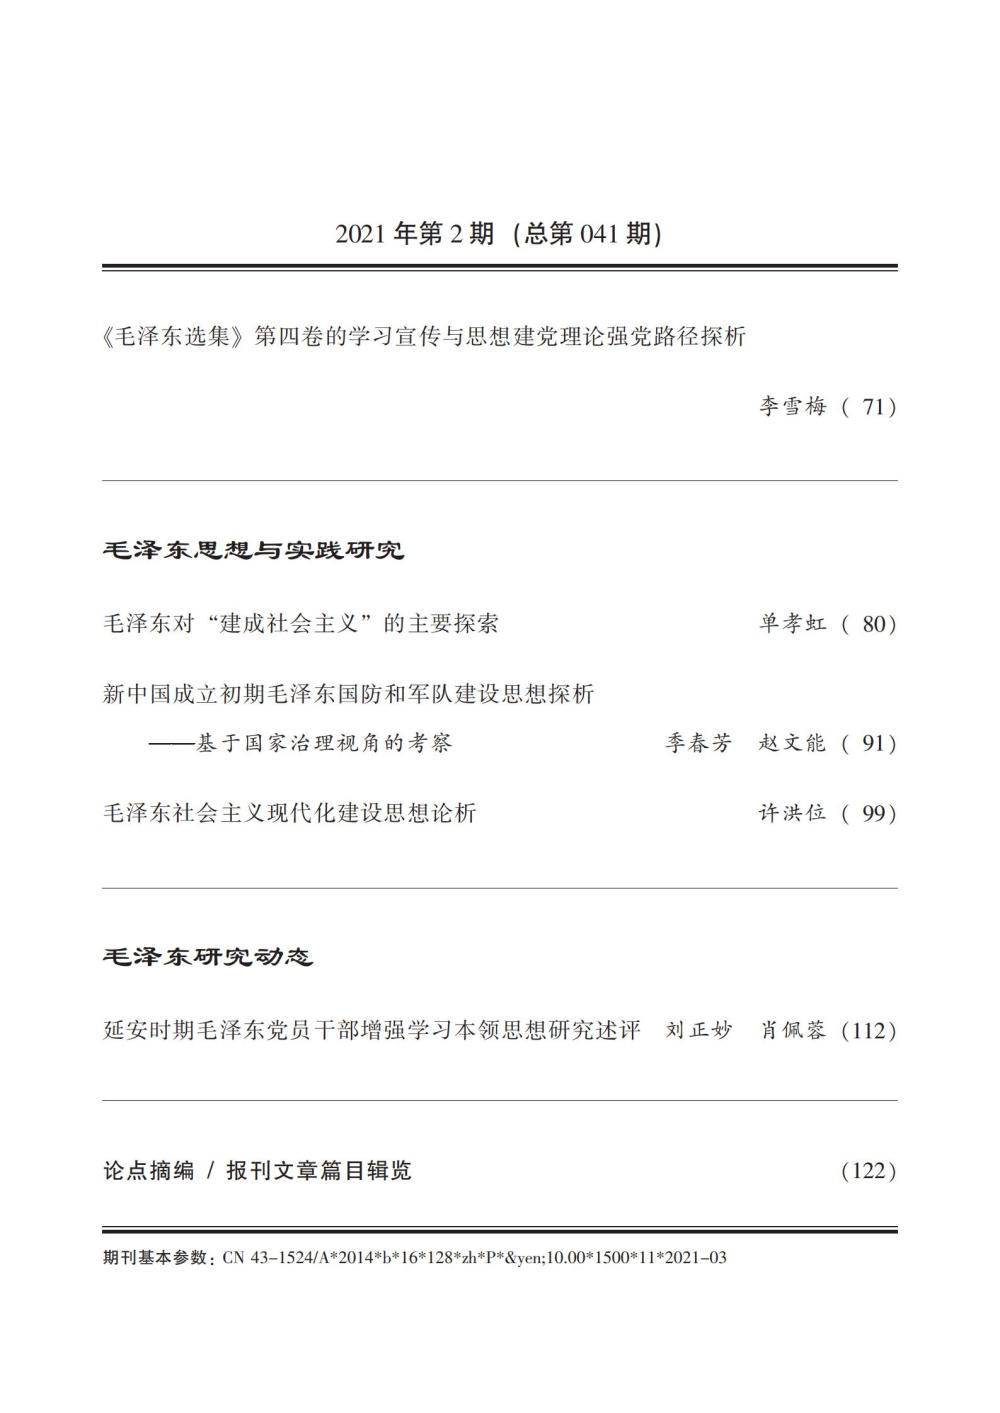 《毛泽东研究》2021年第2期封面目录(图4)